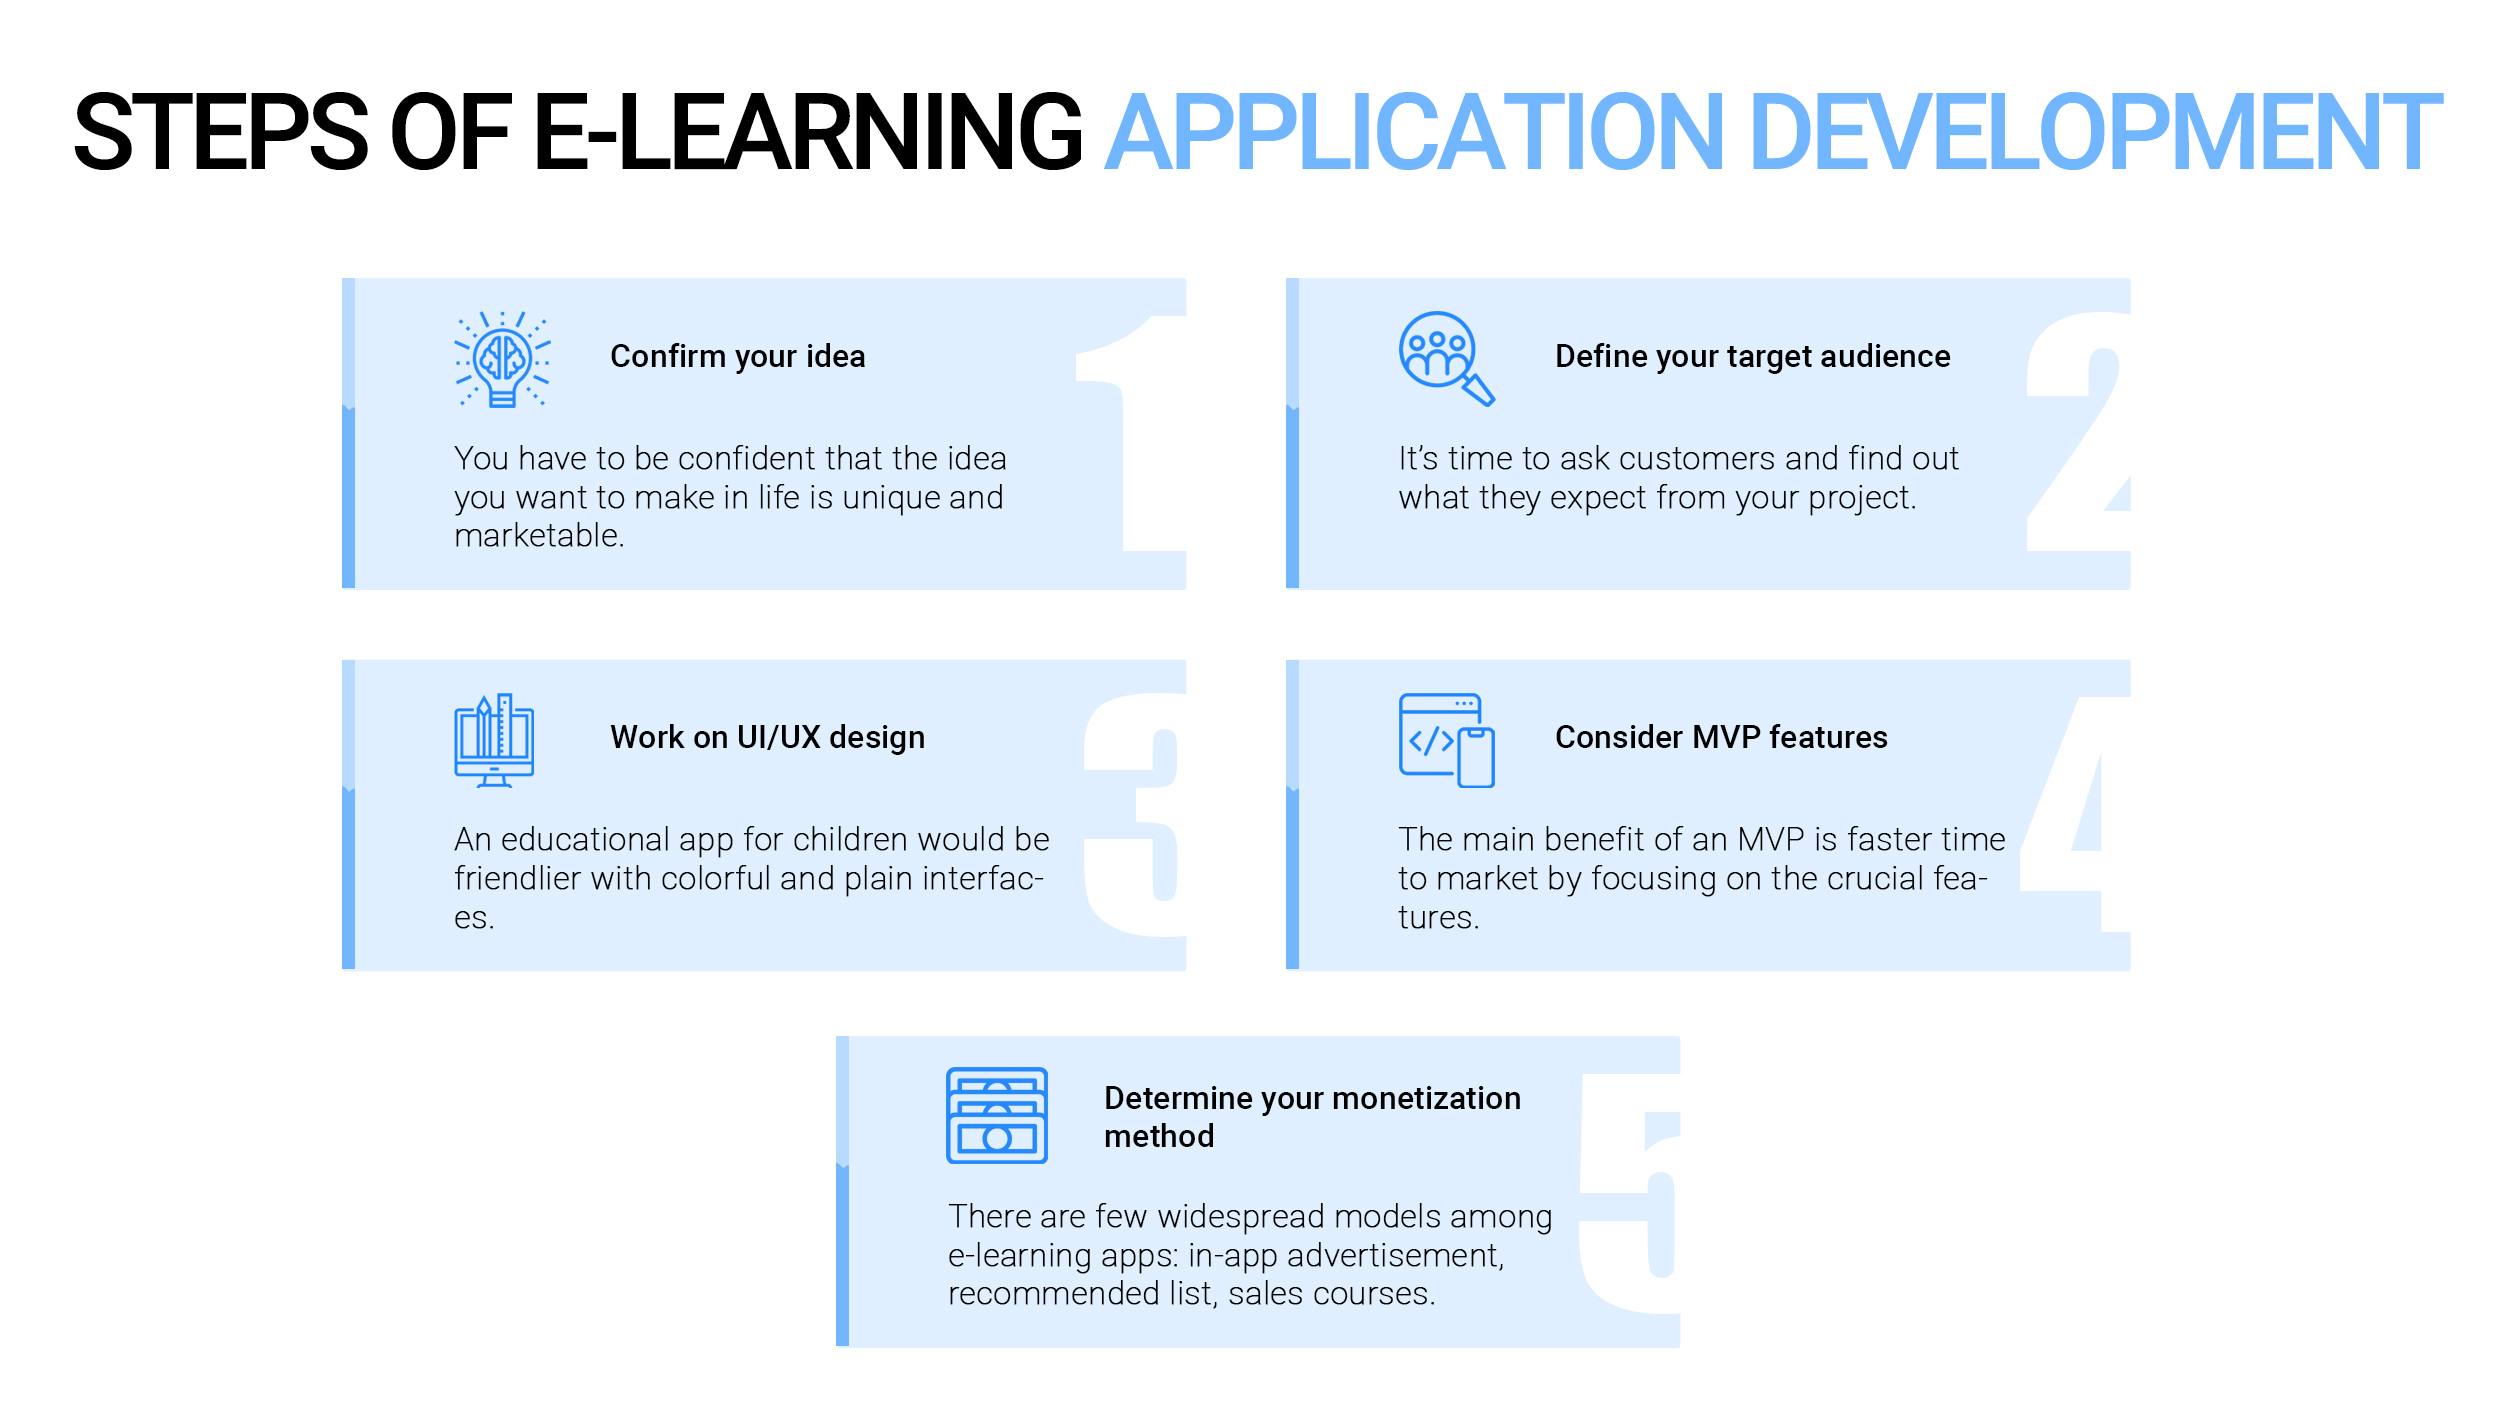 Steps of E-Learning Application Development